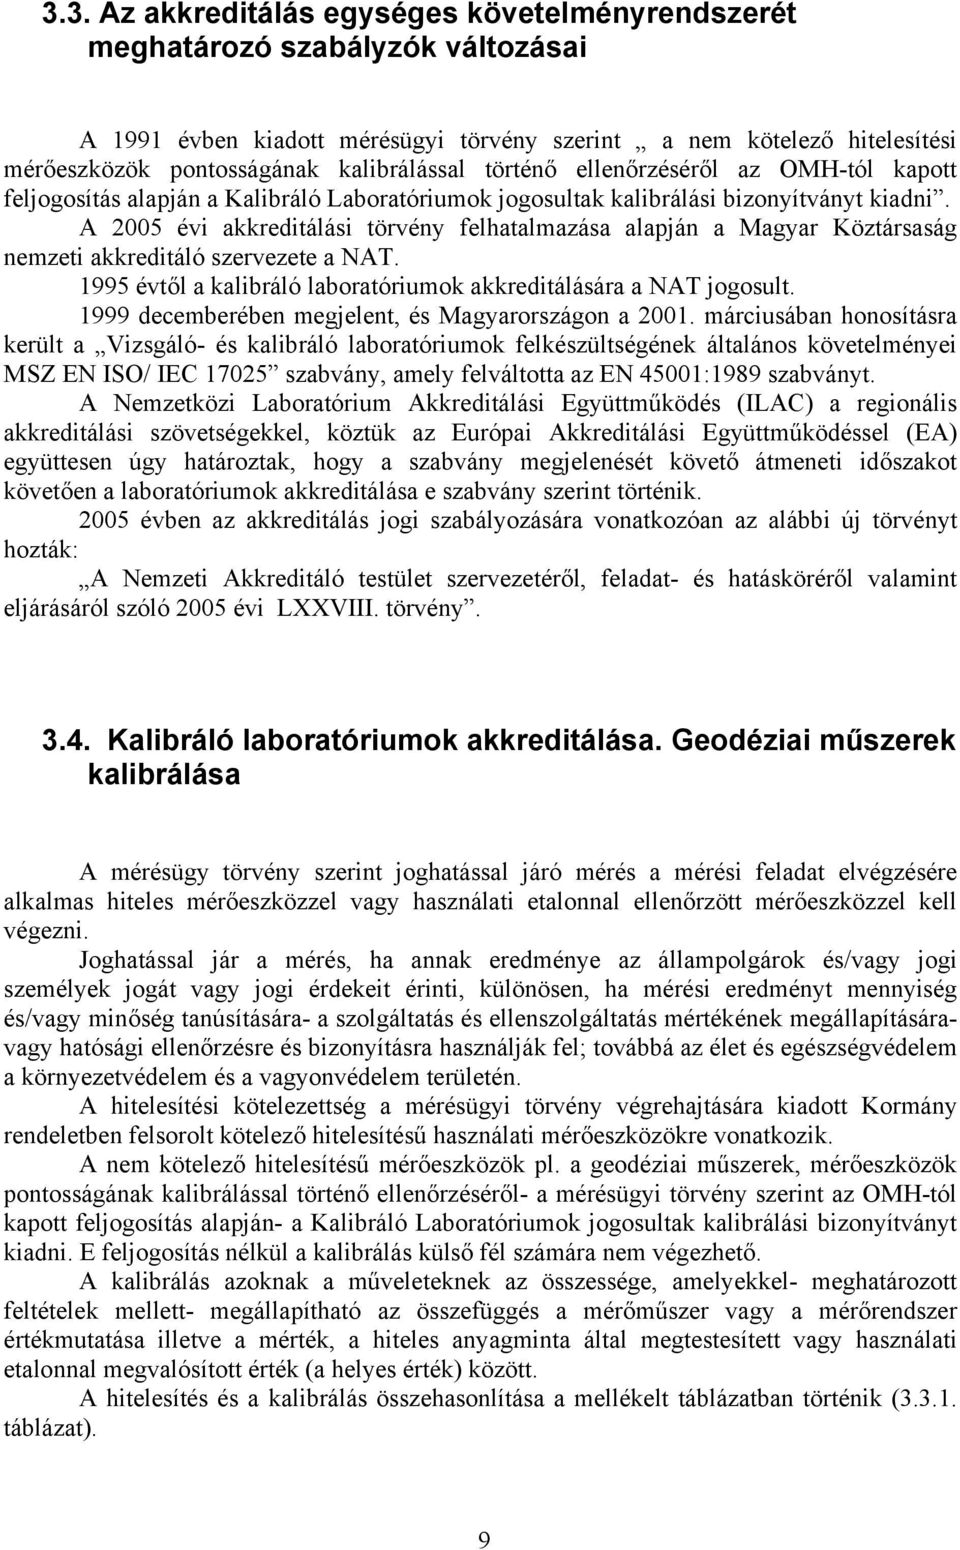 A 2005 évi akkreditálási törvény felhatalmazása alapján a Magyar Köztársaság nemzeti akkreditáló szervezete a NAT. 1995 évtől a kalibráló laboratóriumok akkreditálására a NAT jogosult.